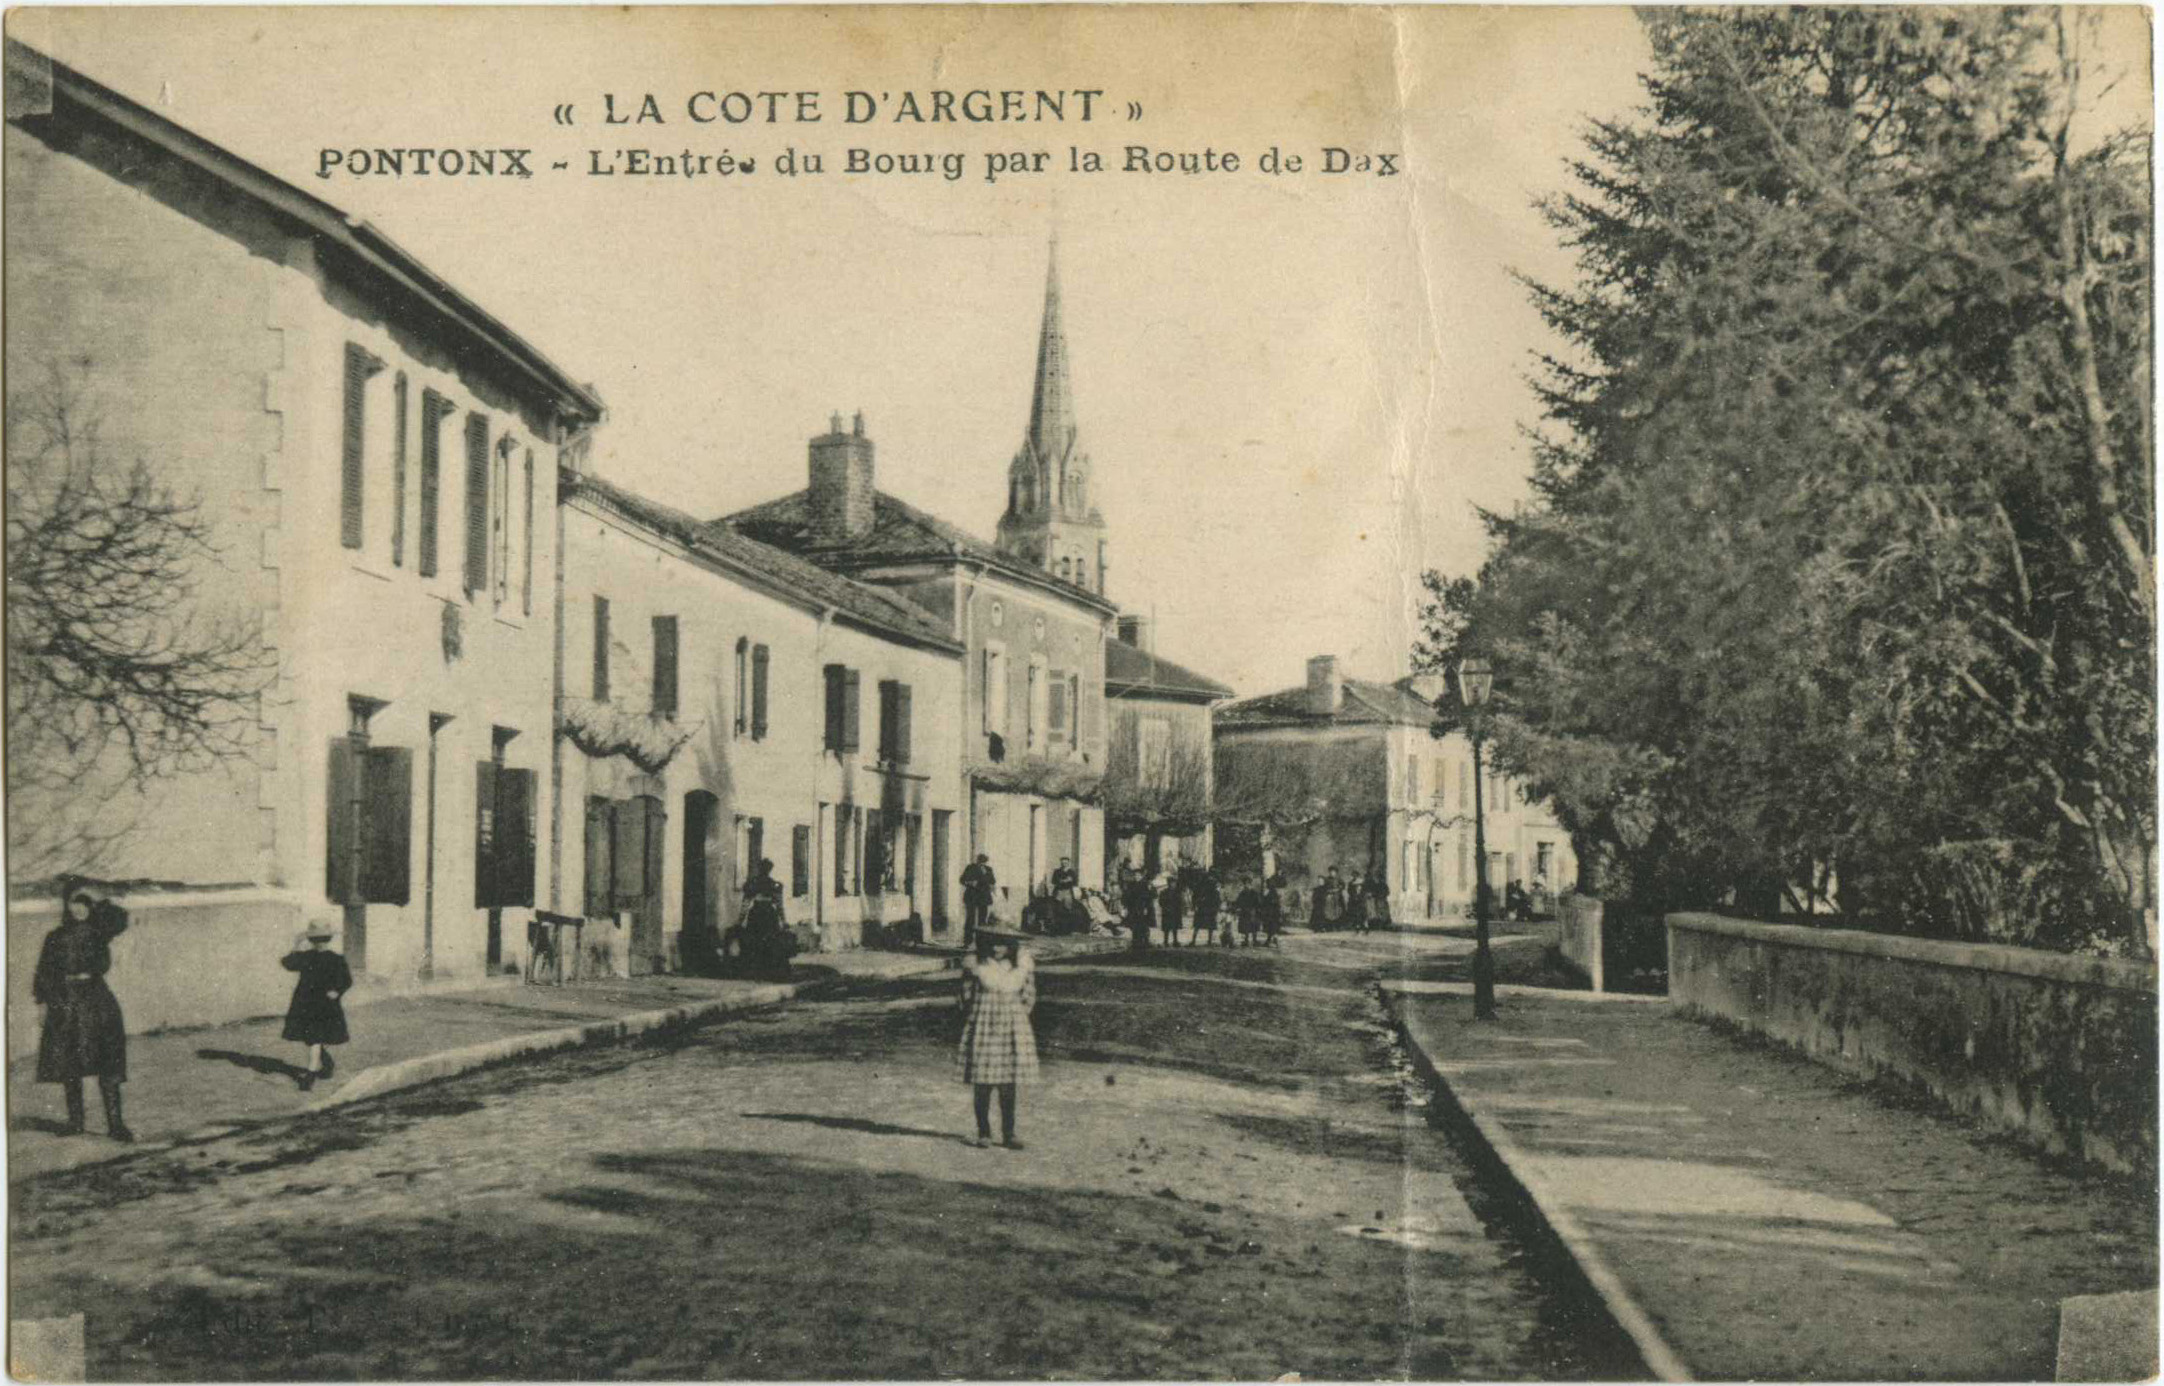 Pontonx-sur-l'Adour - L'Entrée du Bourg par la Route de Dax